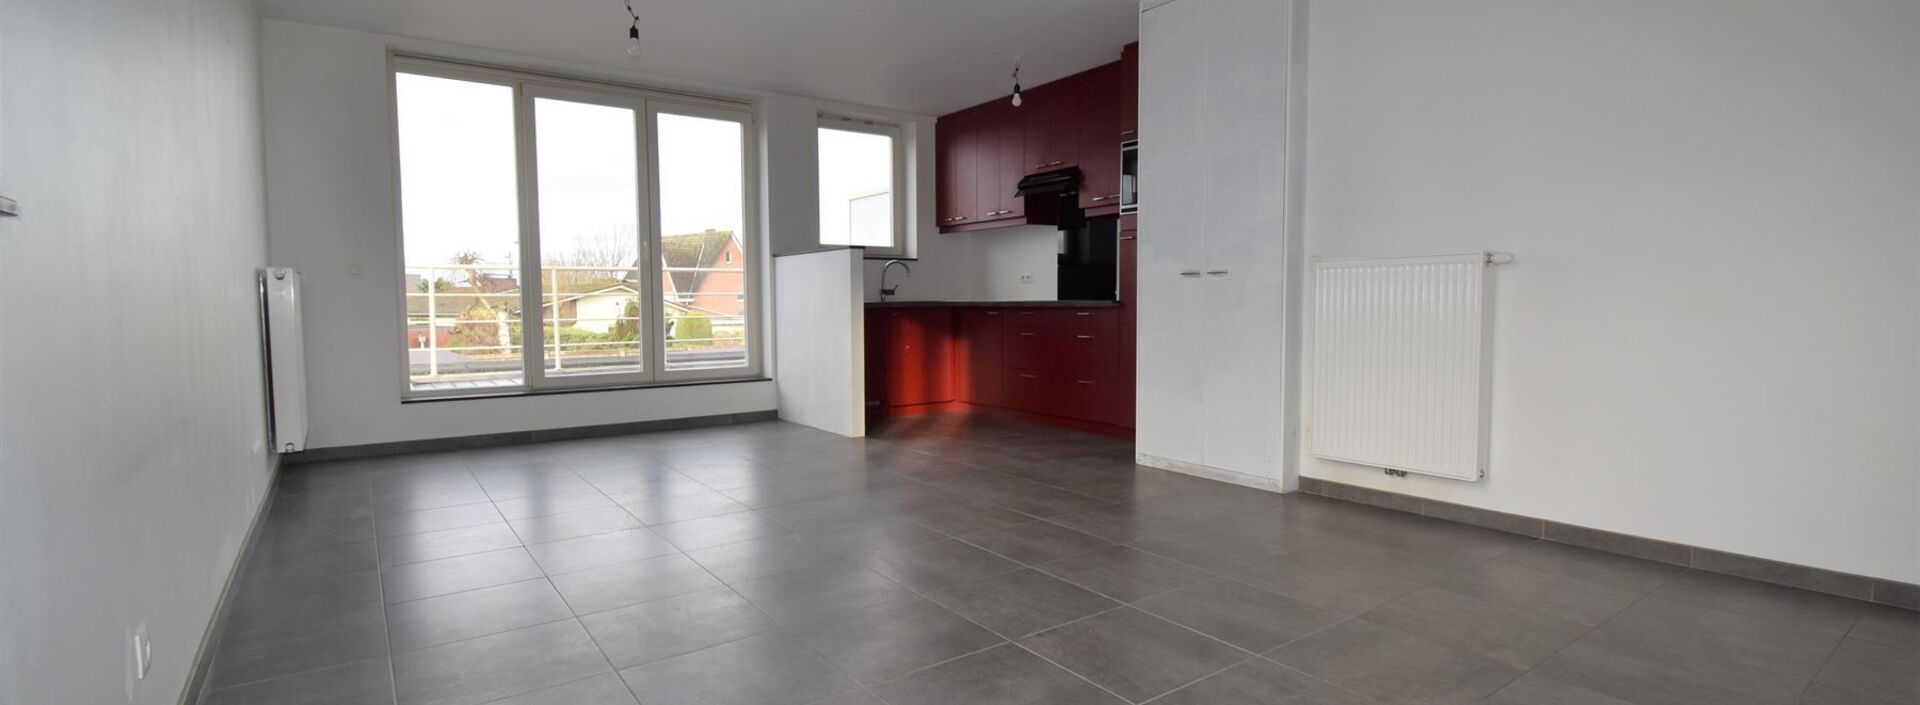 Appartement te huur in Herentals Noorderwijk